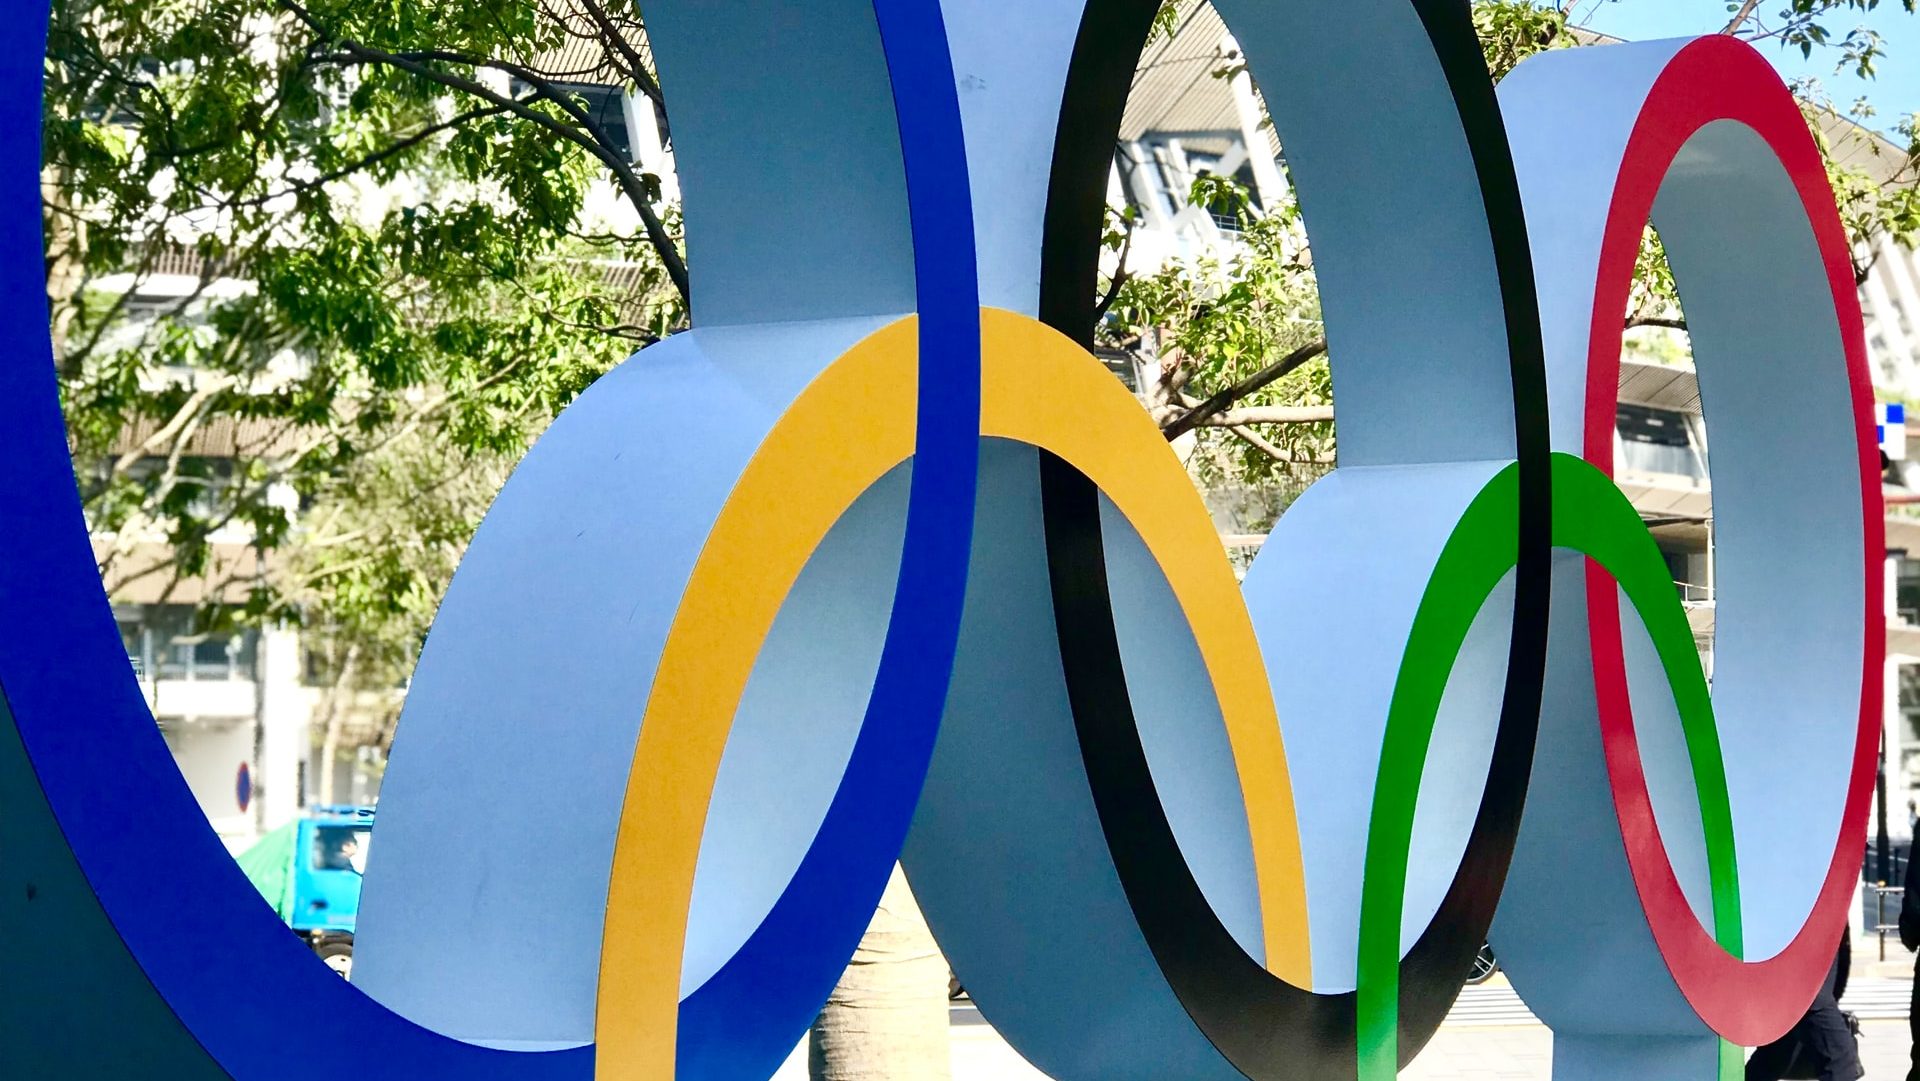 “Olimpiadi nel 2021 come simbolo della vittoria contro la pandemia”